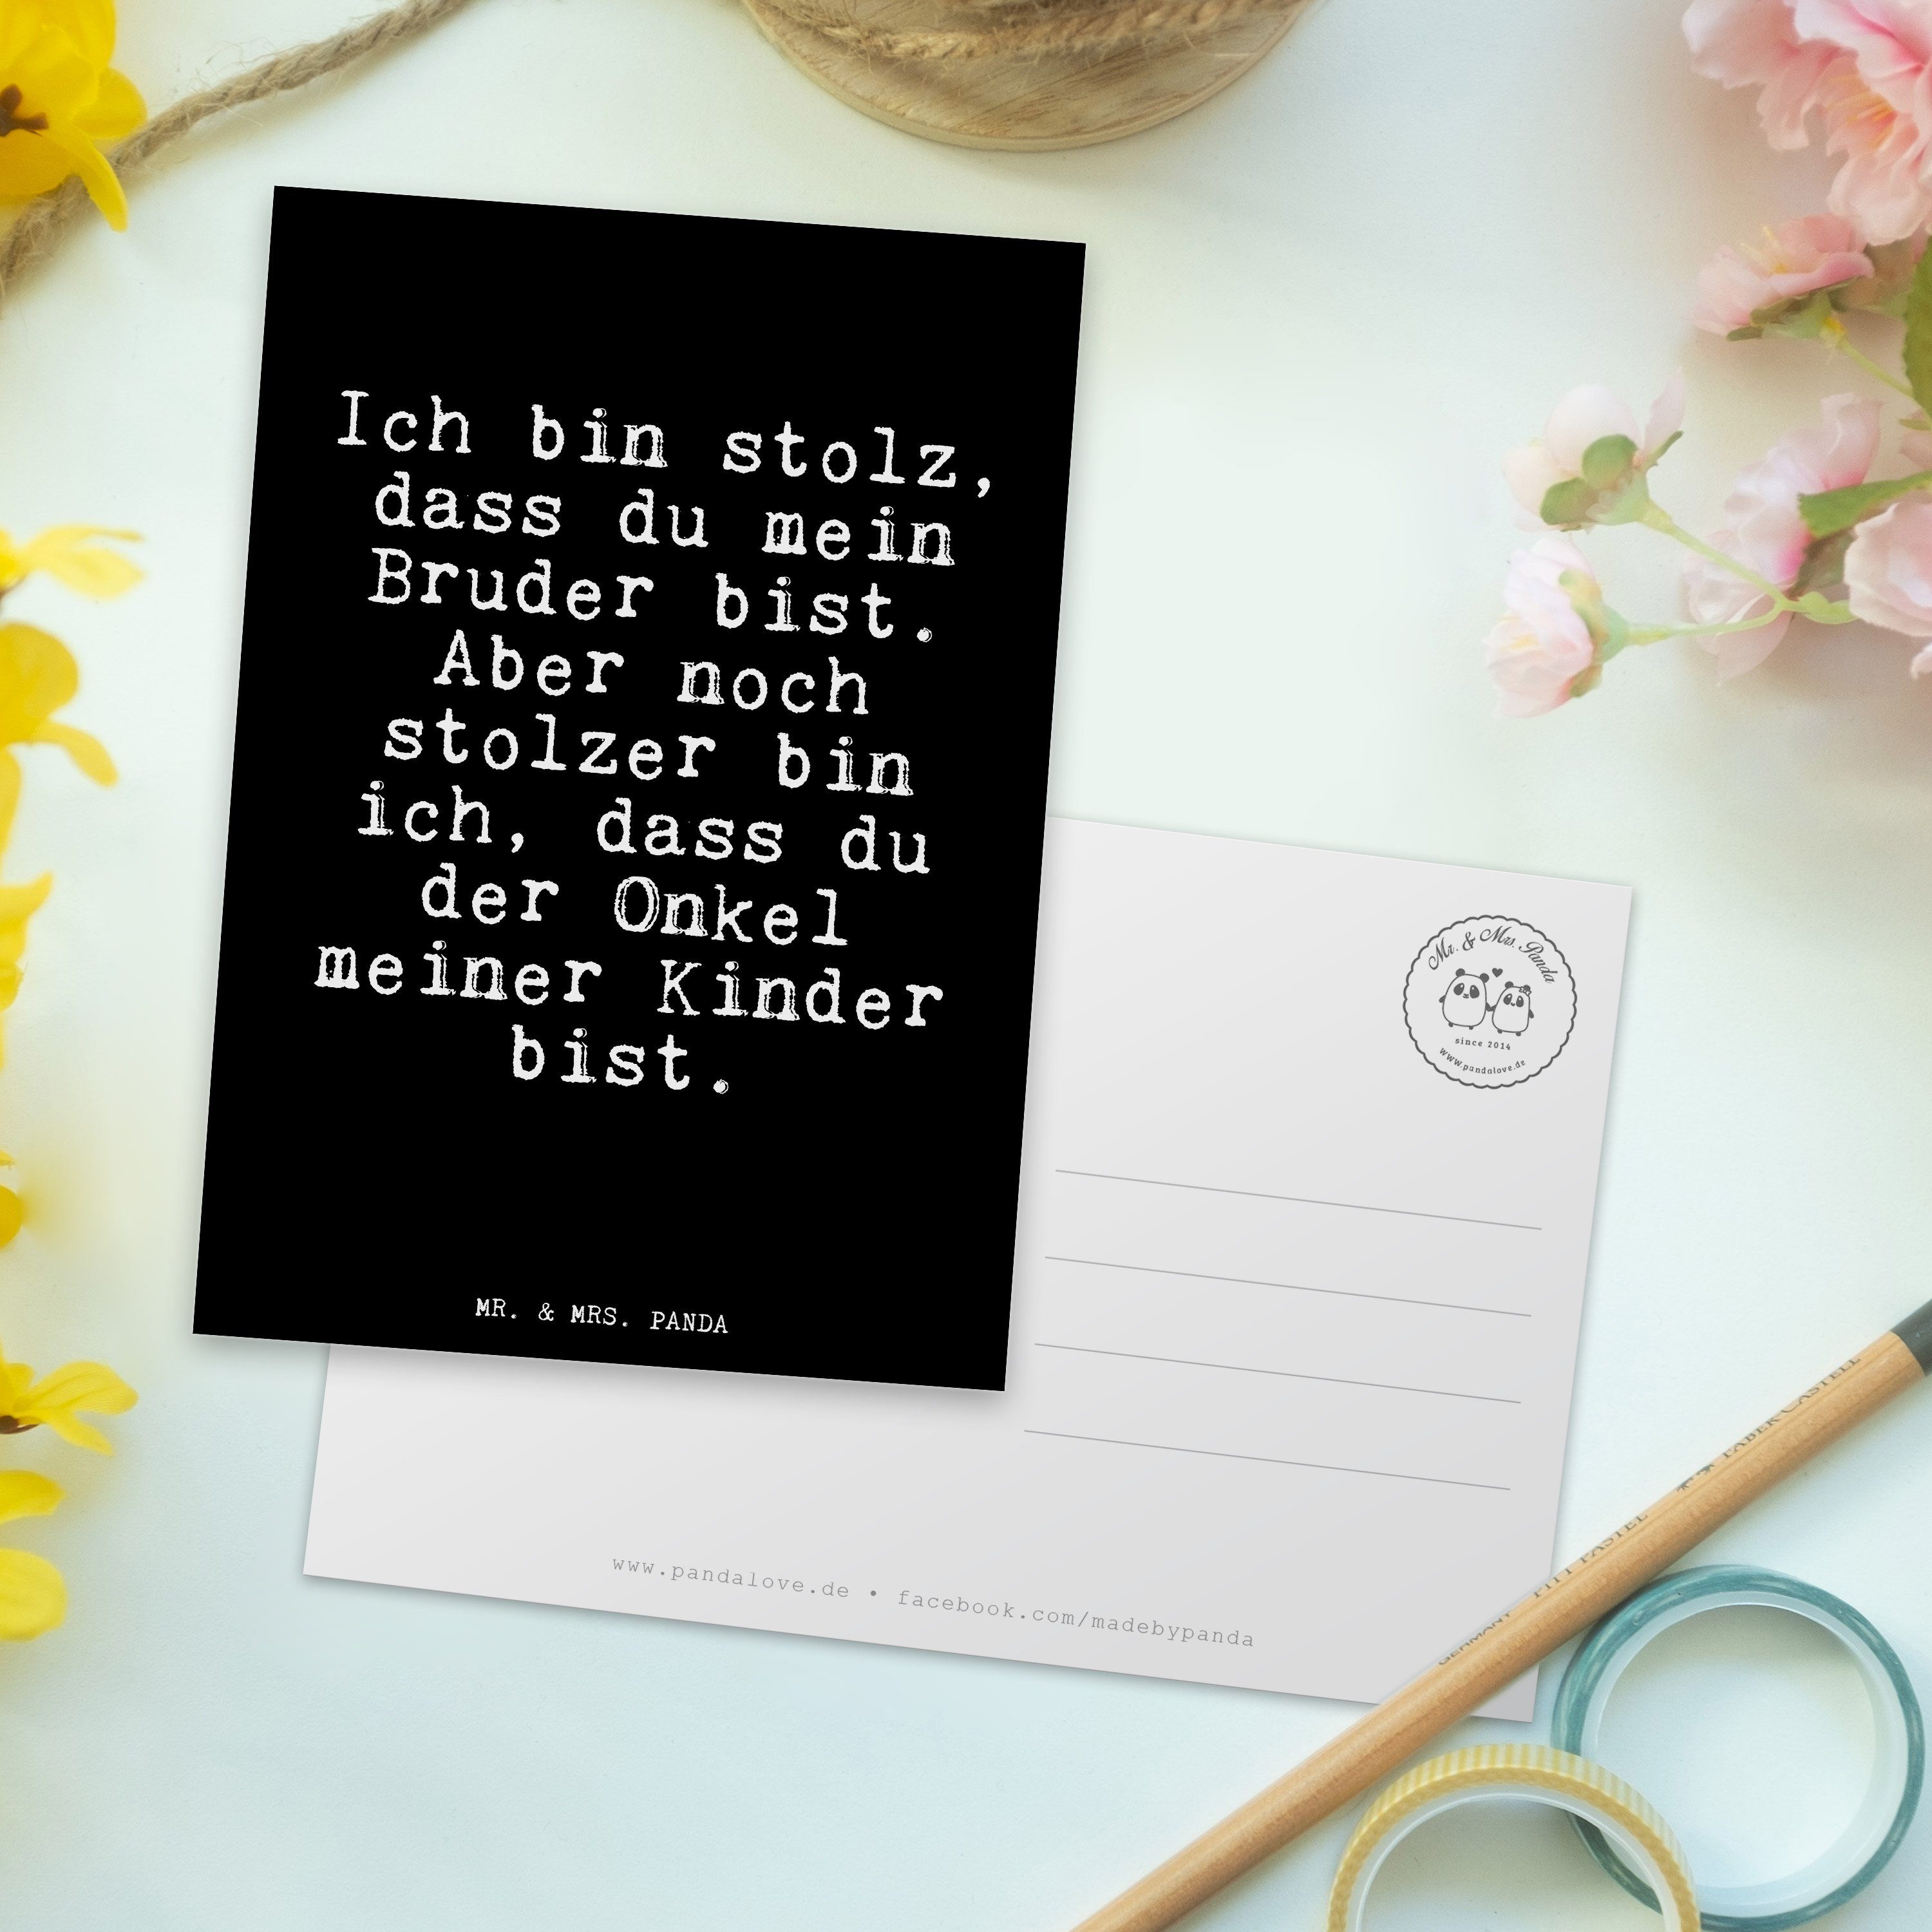 Mrs. - Mr. Spruch, bin Spruch - Ich schöner & Panda Schwarz stolz, dass... Postkarte Geschenk,